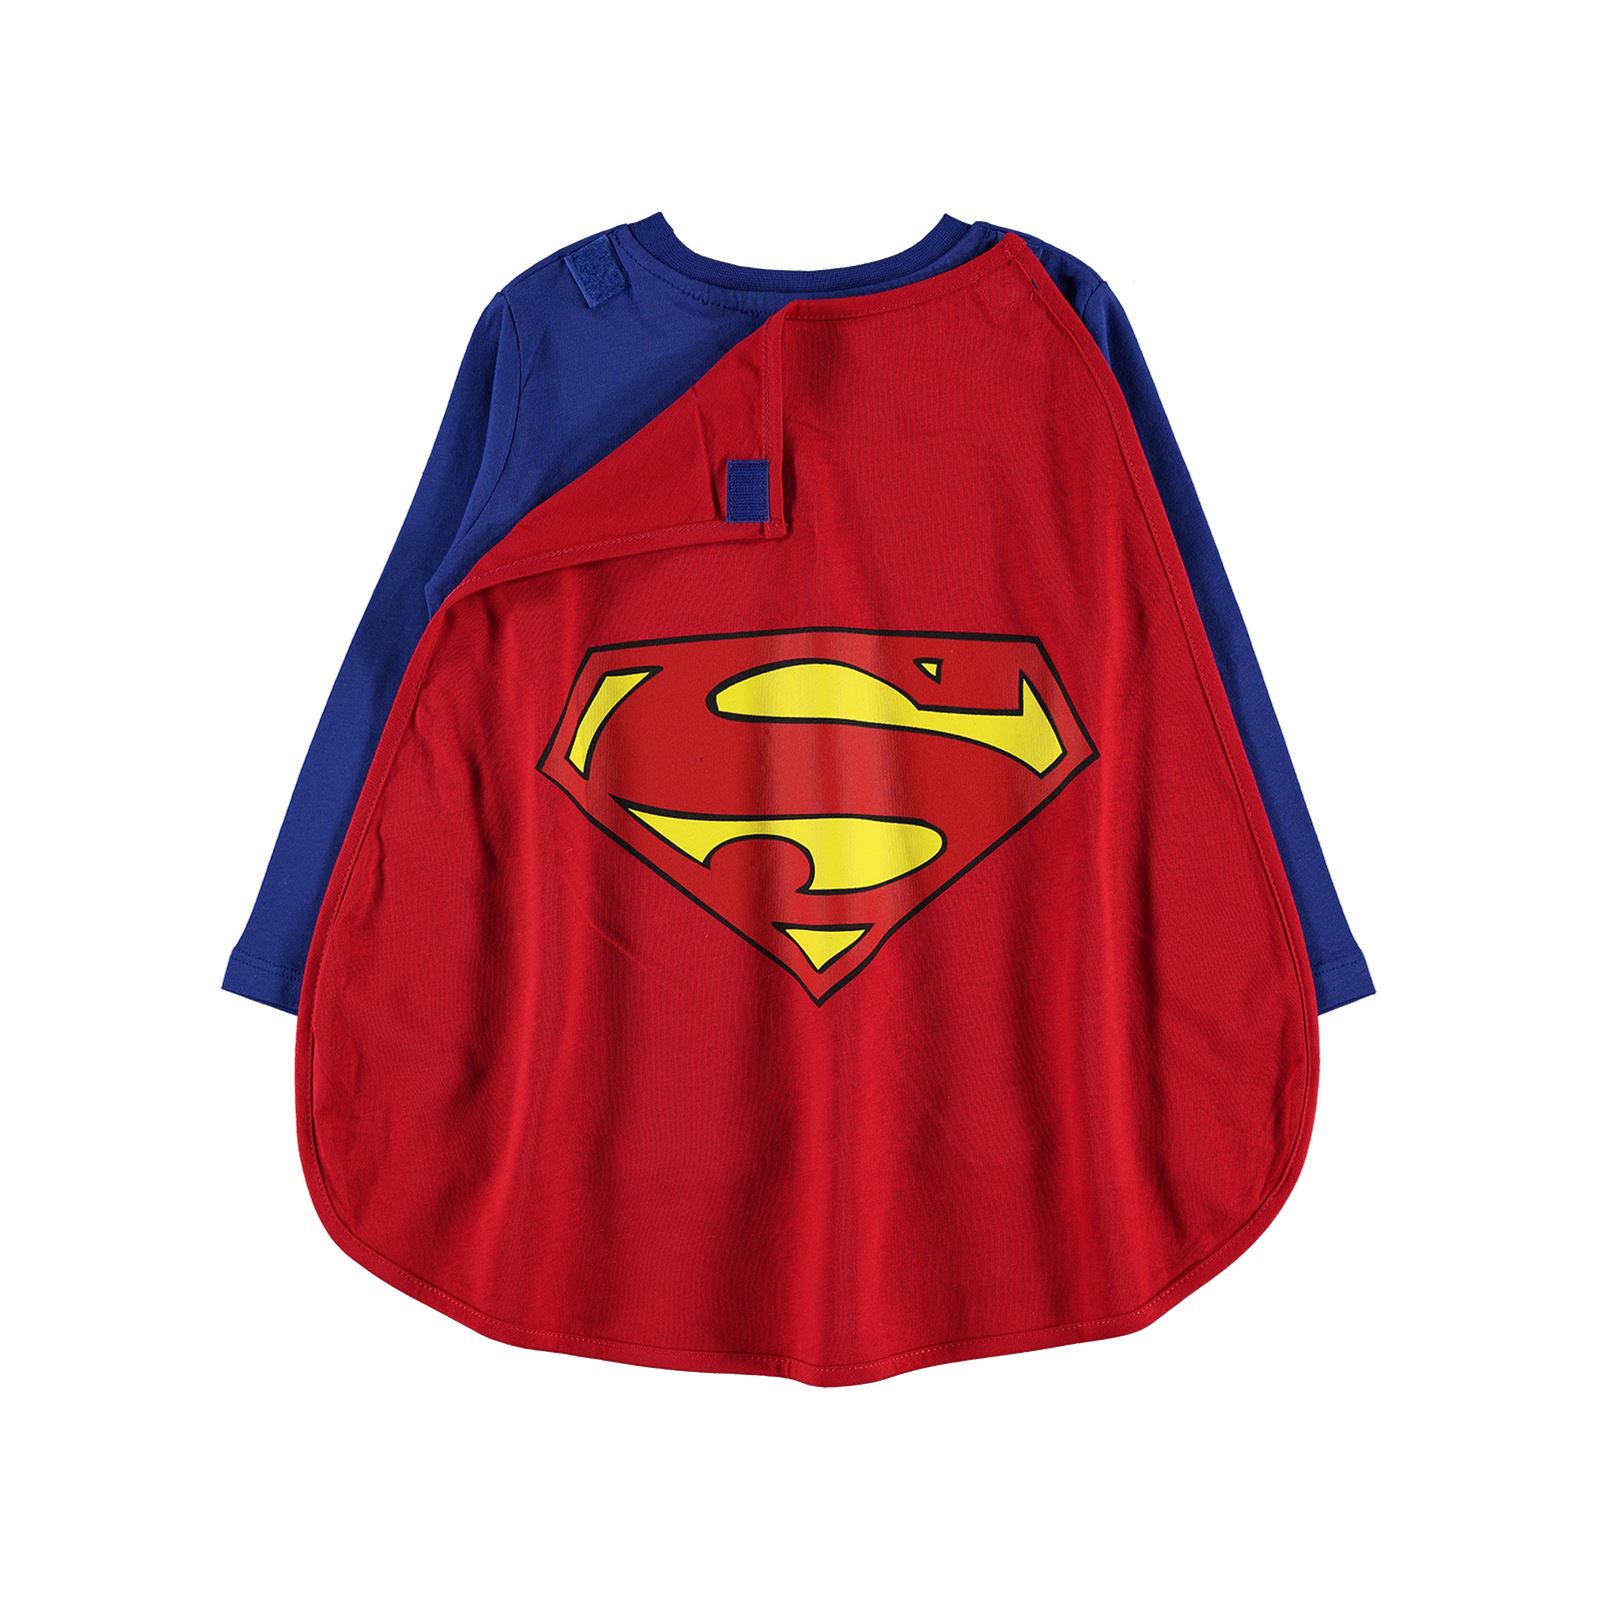 Superman Erkek Çocuk Pelerinli Sweatshirt 2-5 Yaş Saks Mavisi